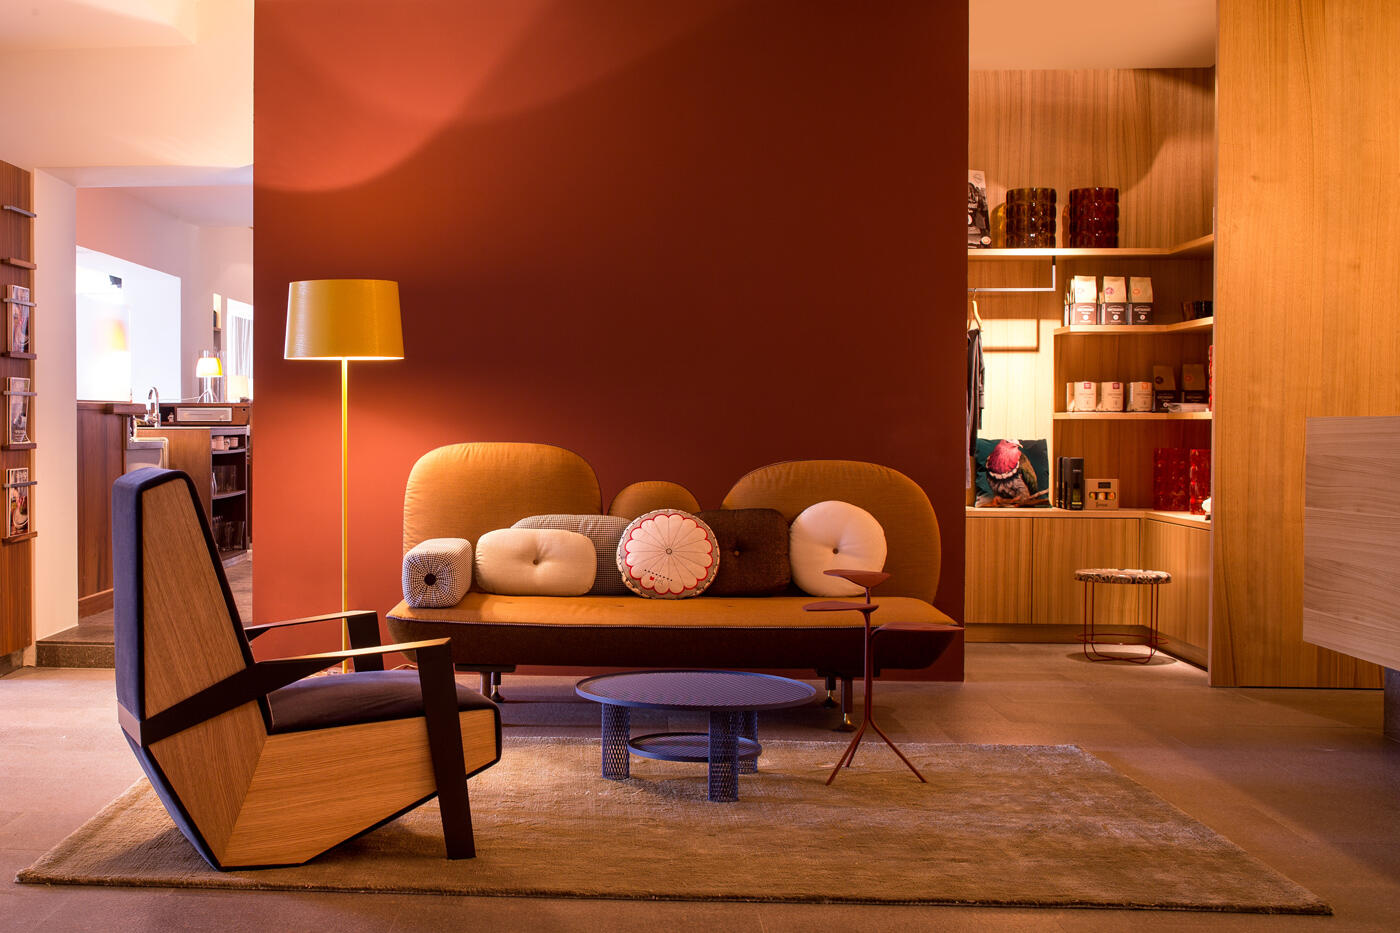 Moderner Sitzbereich in der Rezeption des Hotel Mucheles mit orangenem Sofa und hHolzsessel vor roter Wand